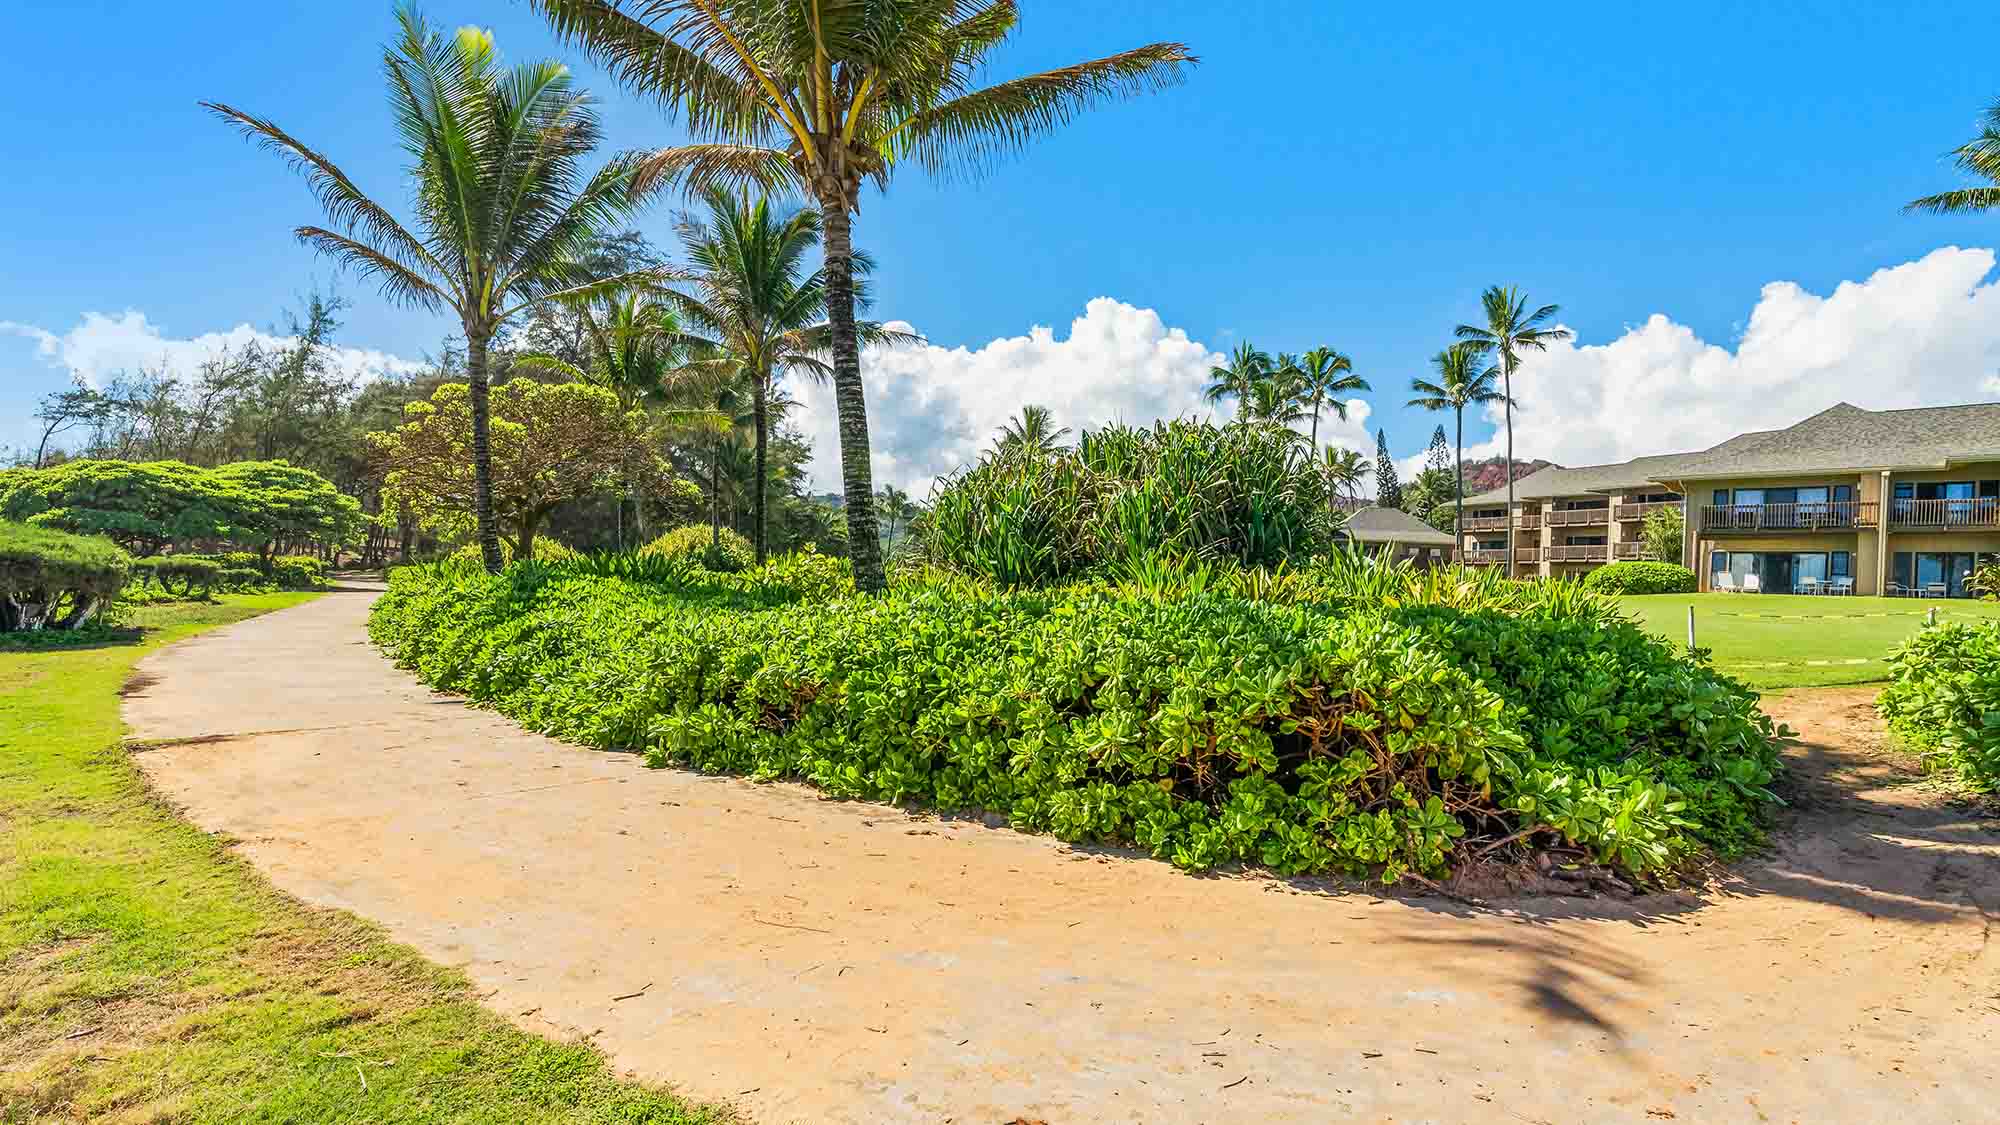 Kaha Lani Resort Walking Trail - Parrish Kauai